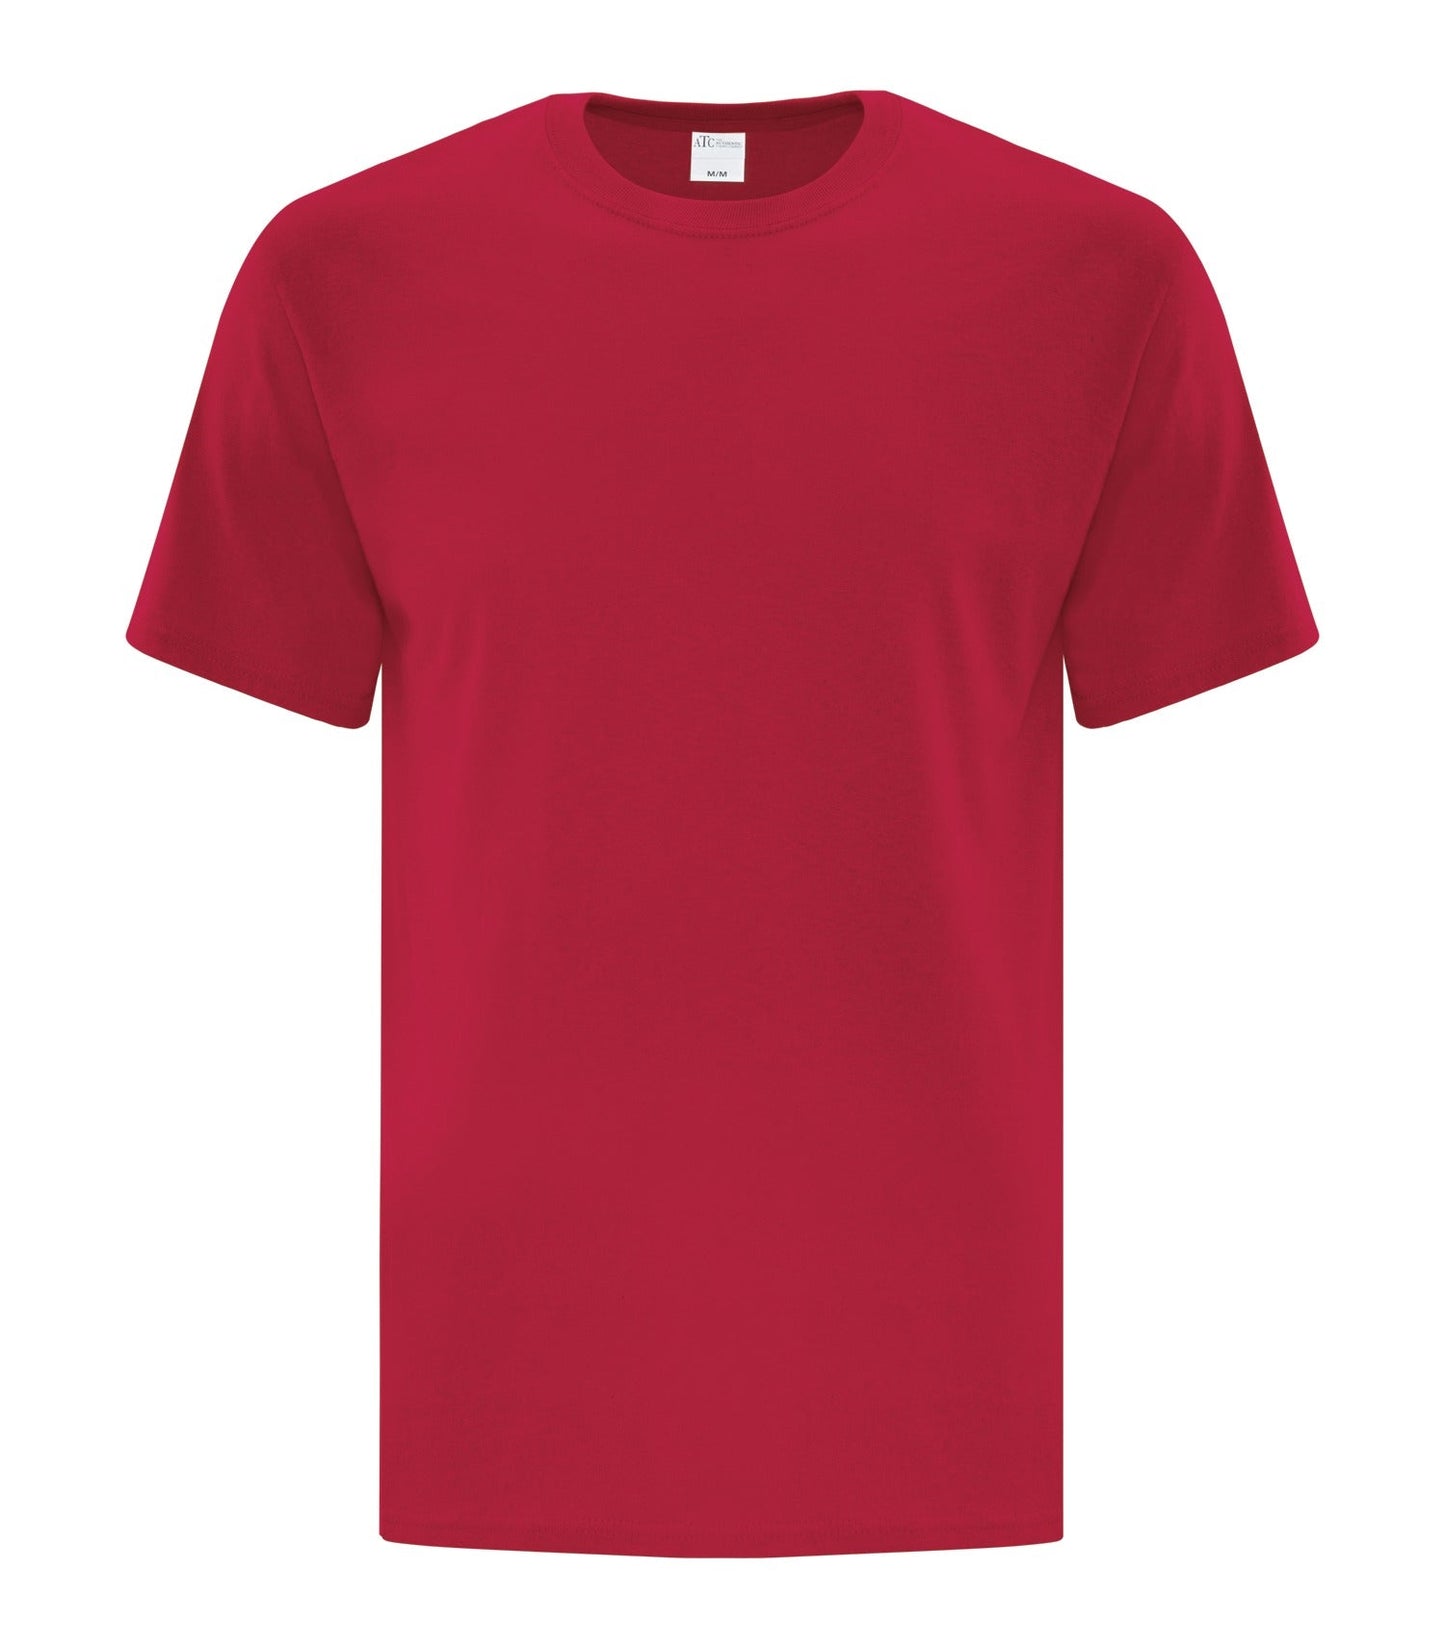 Adult T-Shirt, ATC1000